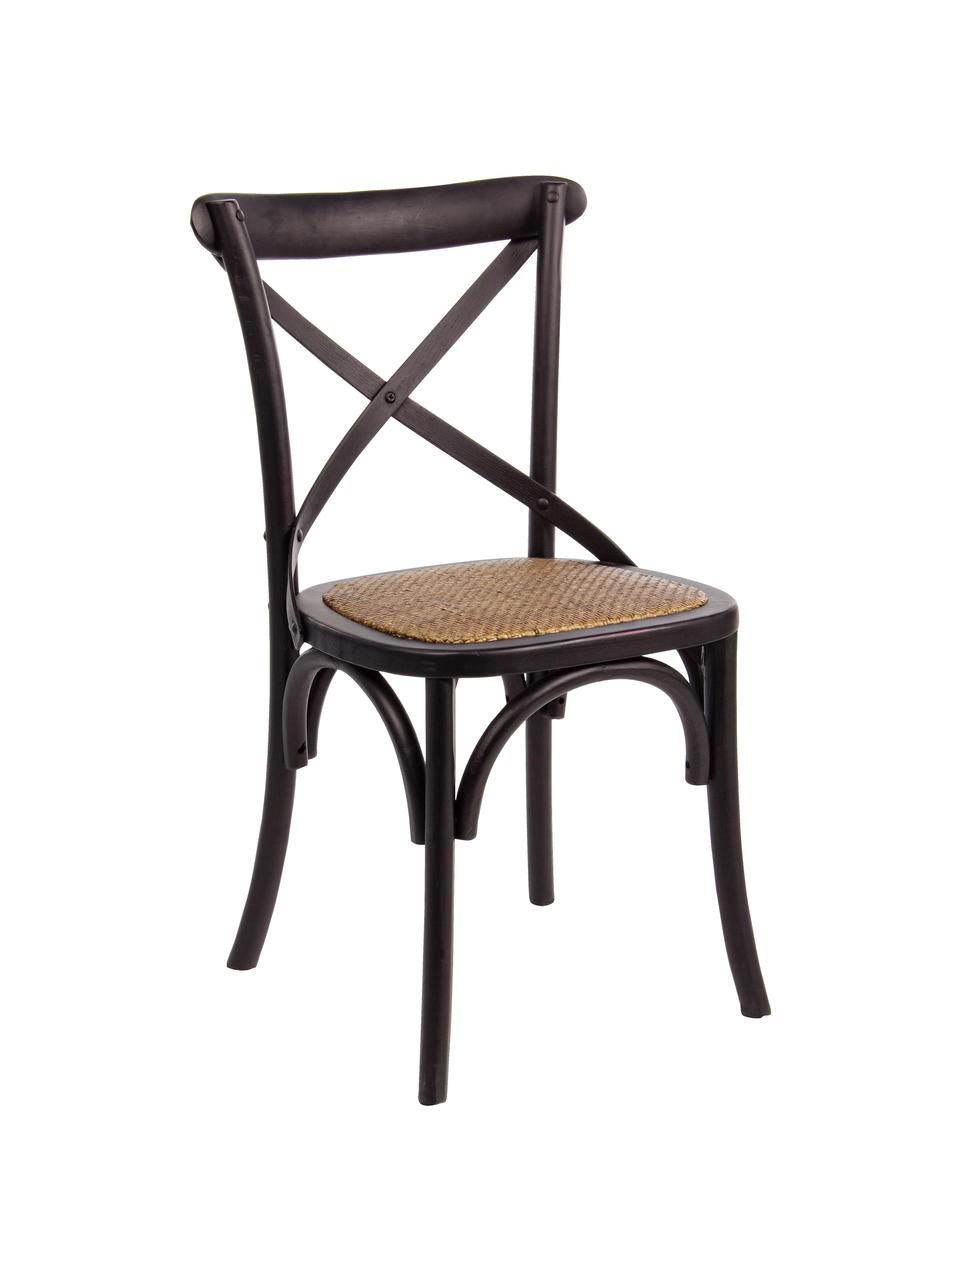 Krzesło z drewna Cross, Stelaż: drewno wiązowe, lakierowa, Czarny, S 42 x G 46 cm